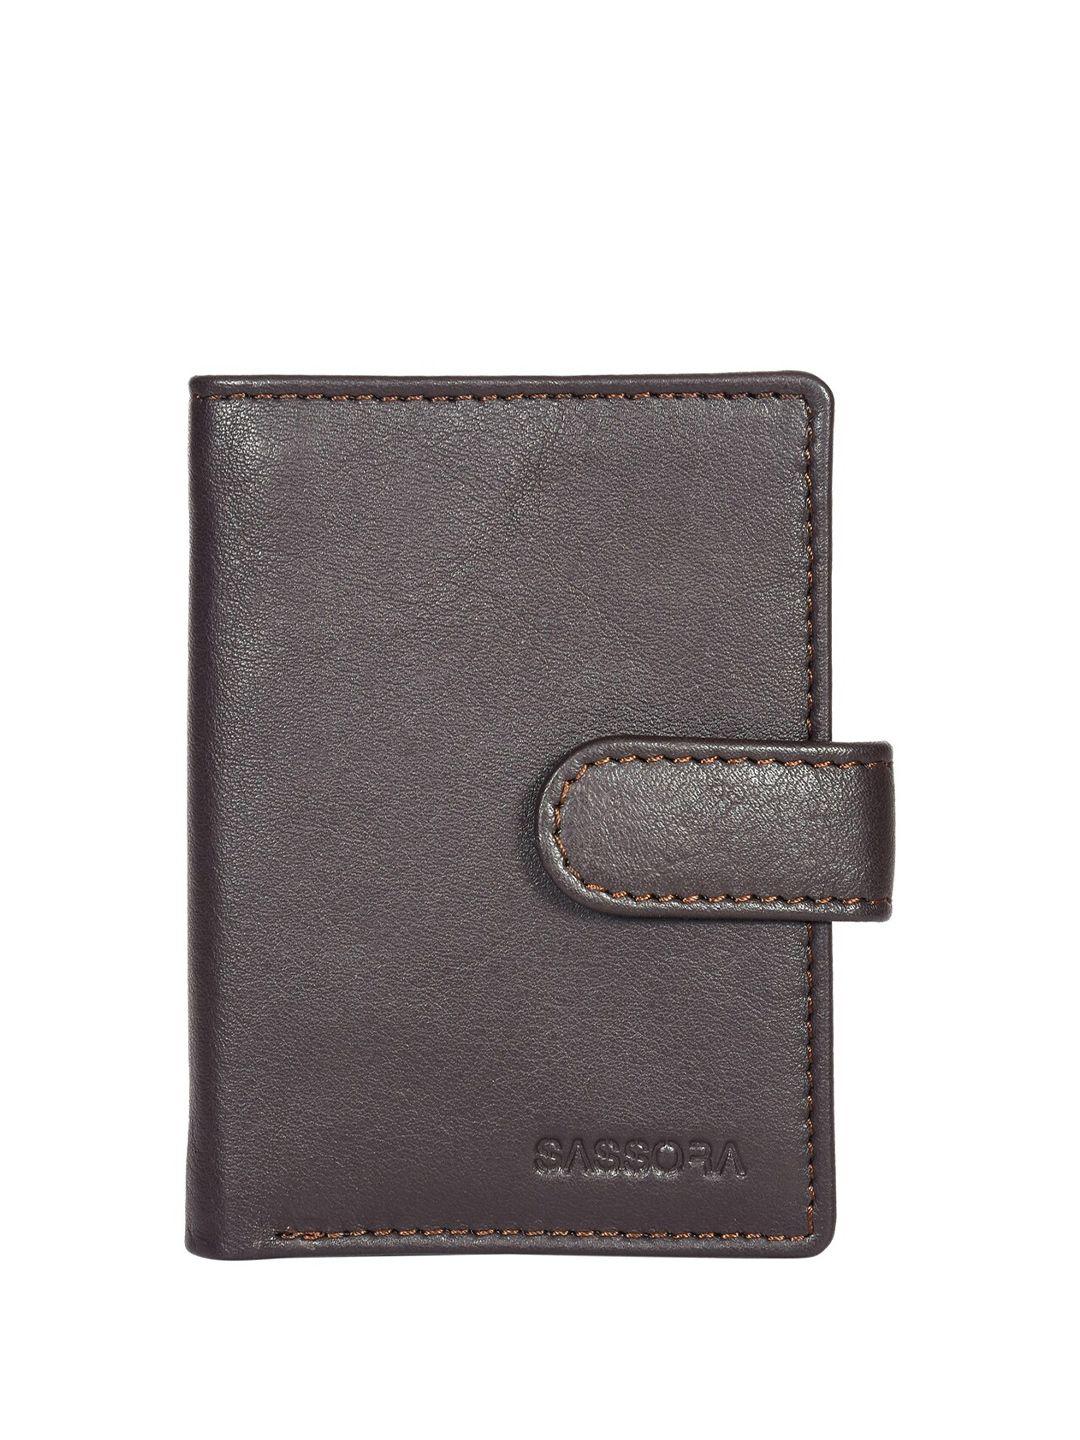 sassora unisex brown textured leather card holder